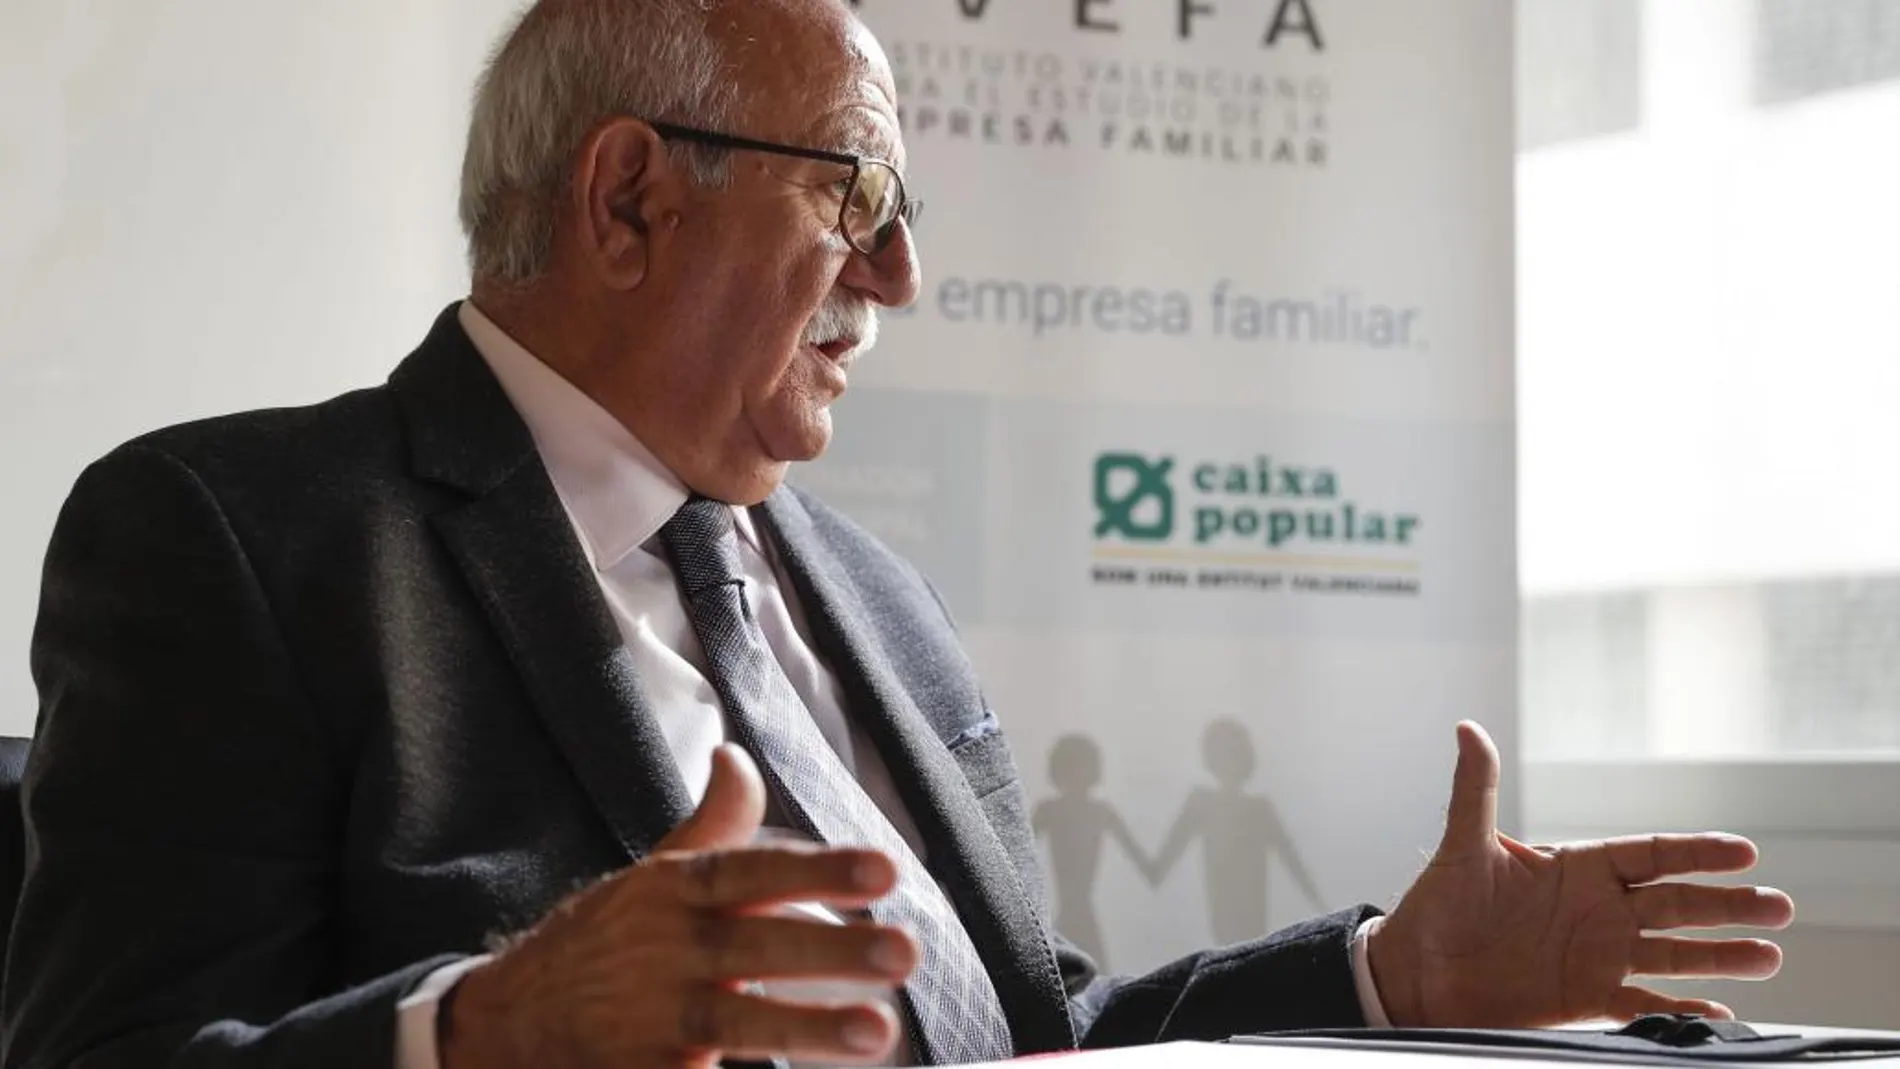 El presidente del Instituto de Empresa Familiar, José Bernardo Noblejas